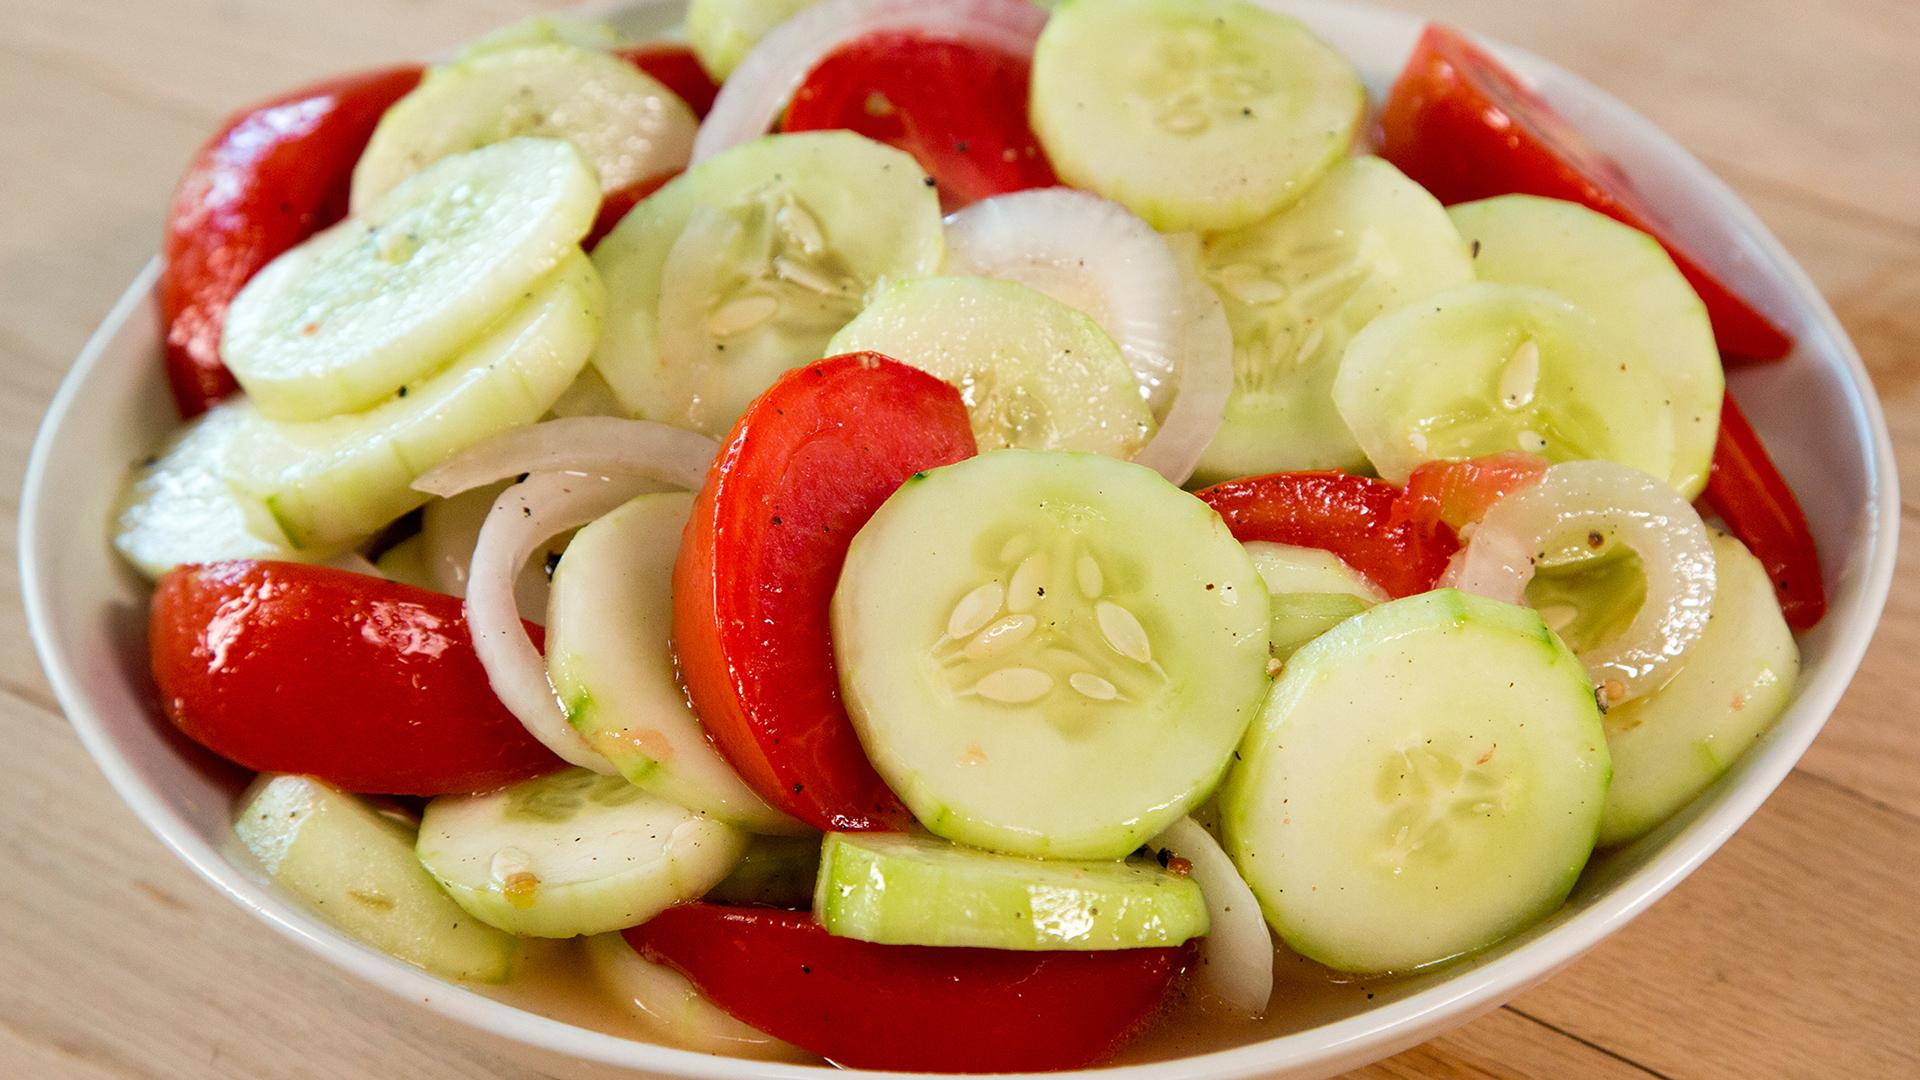 टमाटर और खीरा का एक साथ सेवन होता है सेहत के लिए हानिकारक, भूलकर भी इसका सलाद...-Consuming tomato and cucumber together is injurious to health, even forgetting its salad...